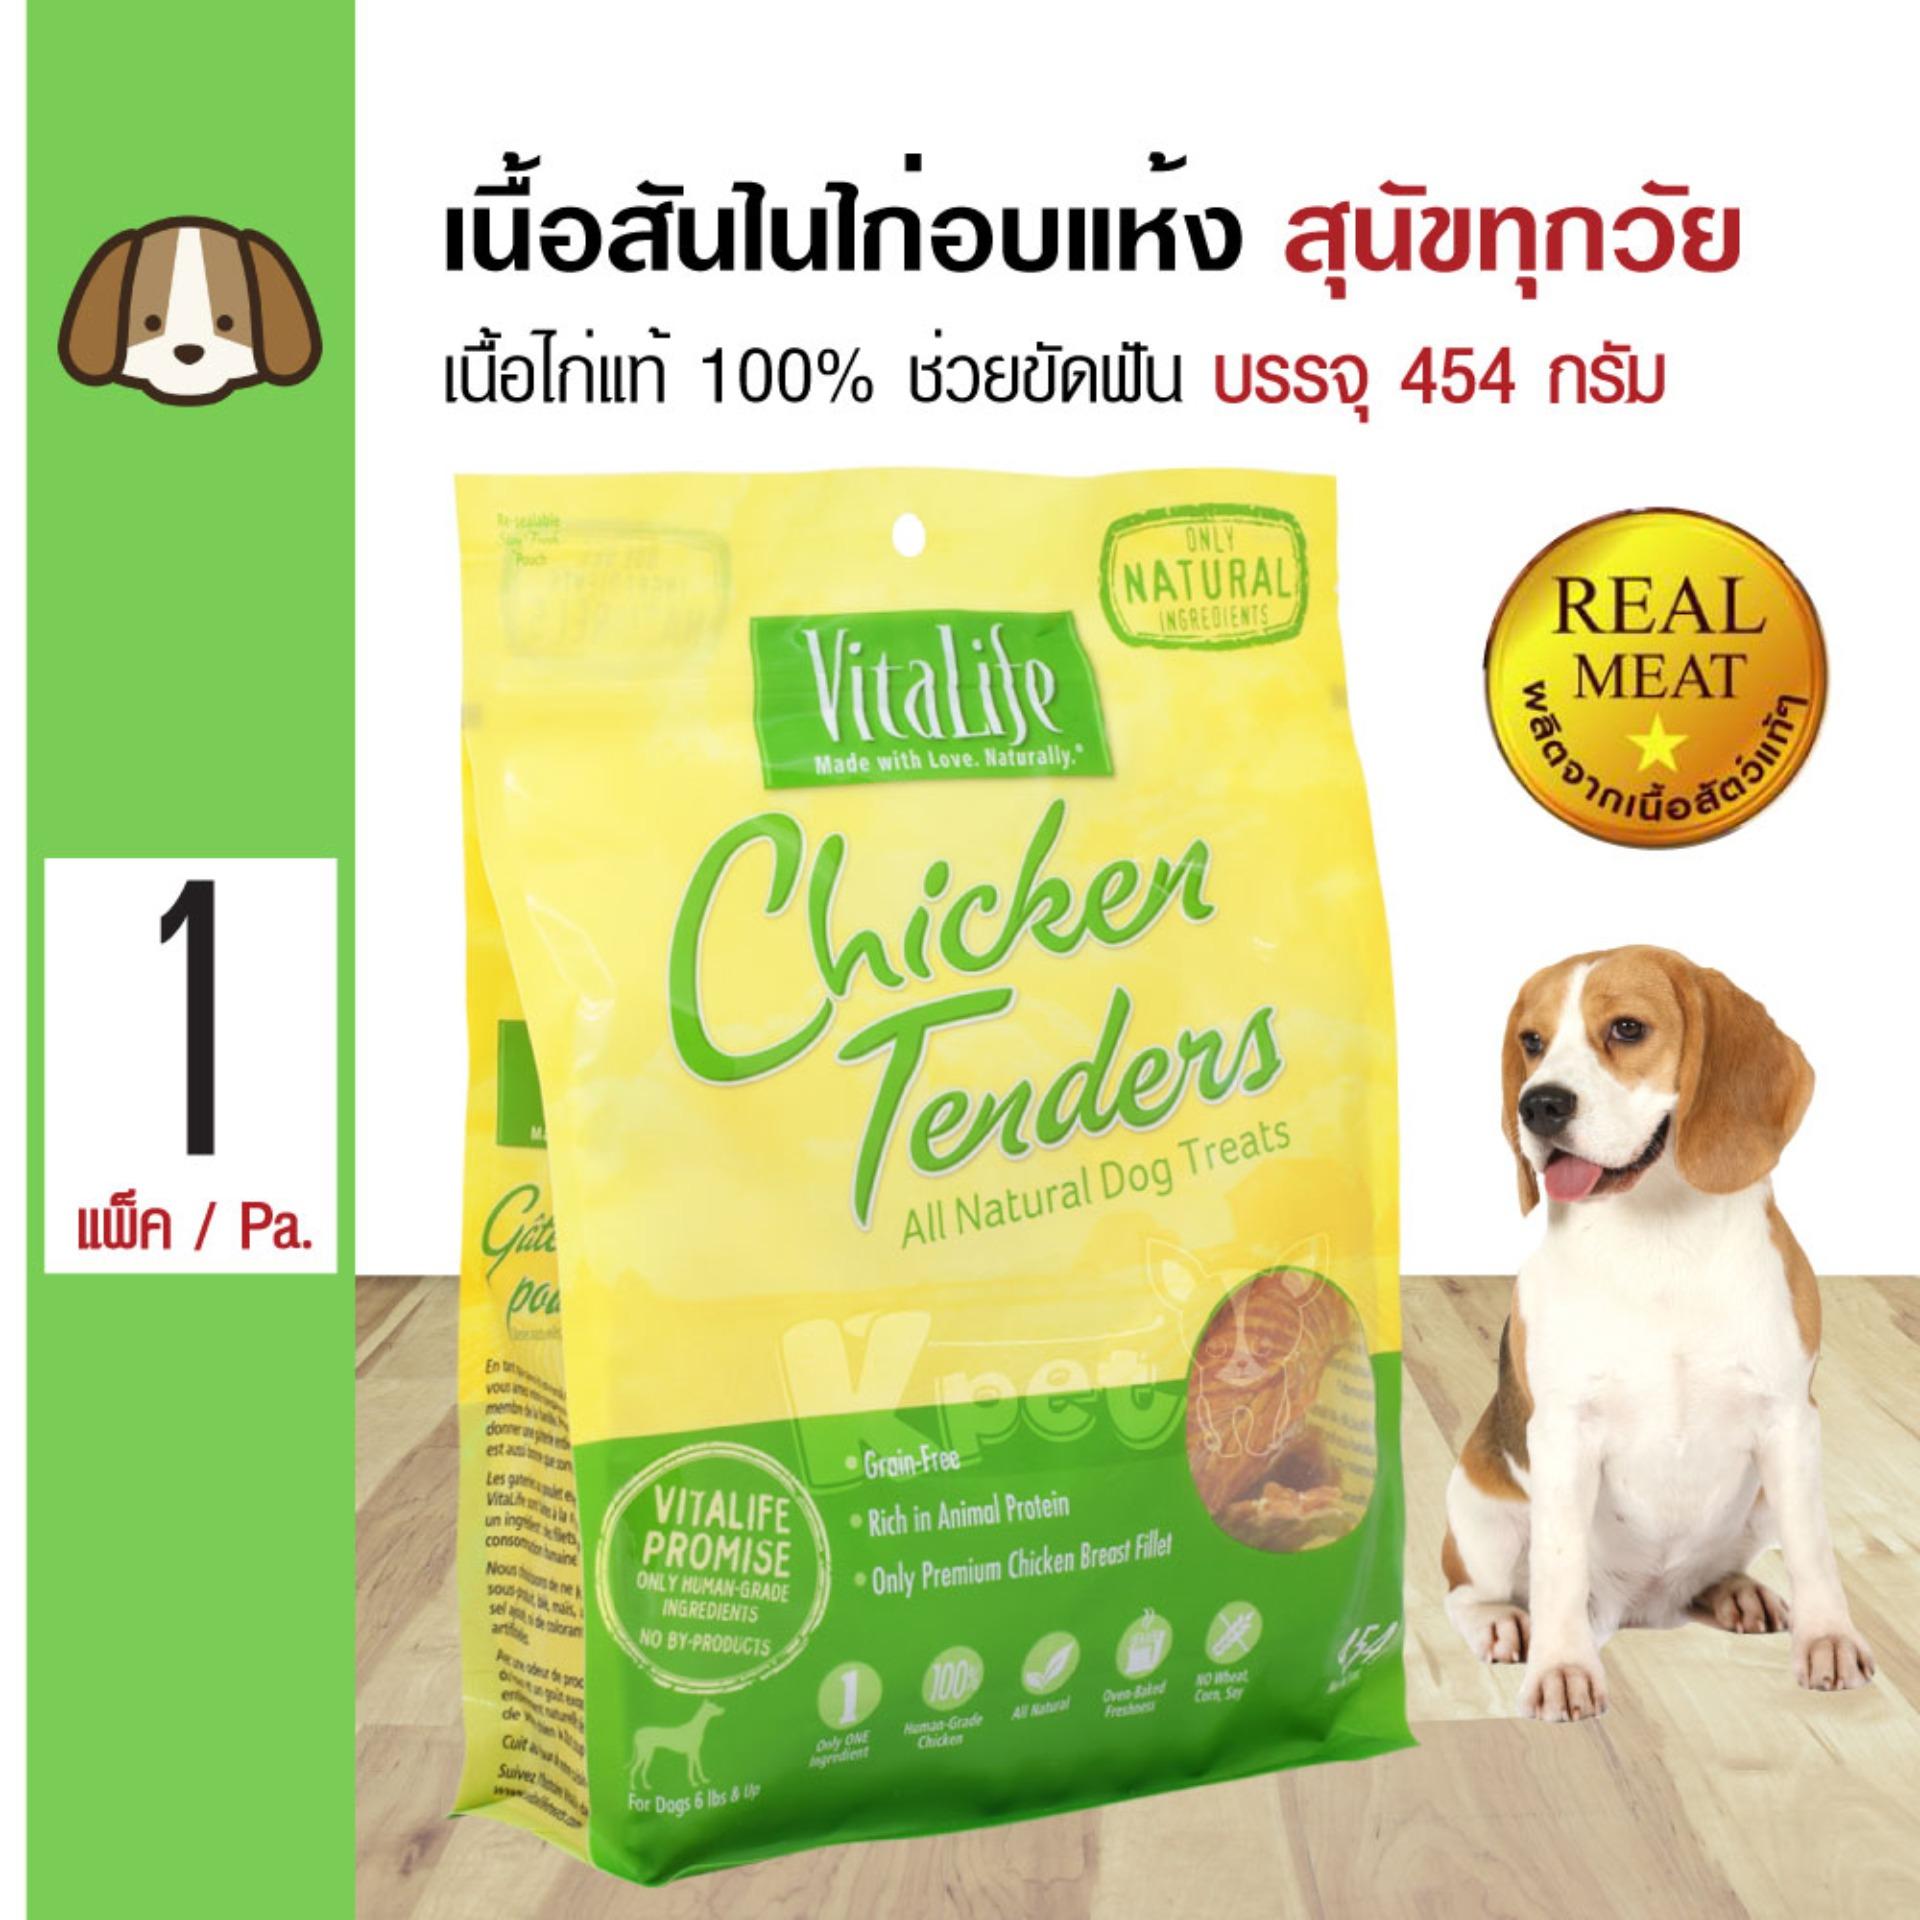 Vitalife Chicken Tenders ขนมสุนัข สันในไก่อบแห้งแท้ 100% ช่วยขัดฟัน สำหรับสุนัขทุกสายพันธุ์ (454 กรัม/แพ็ค)